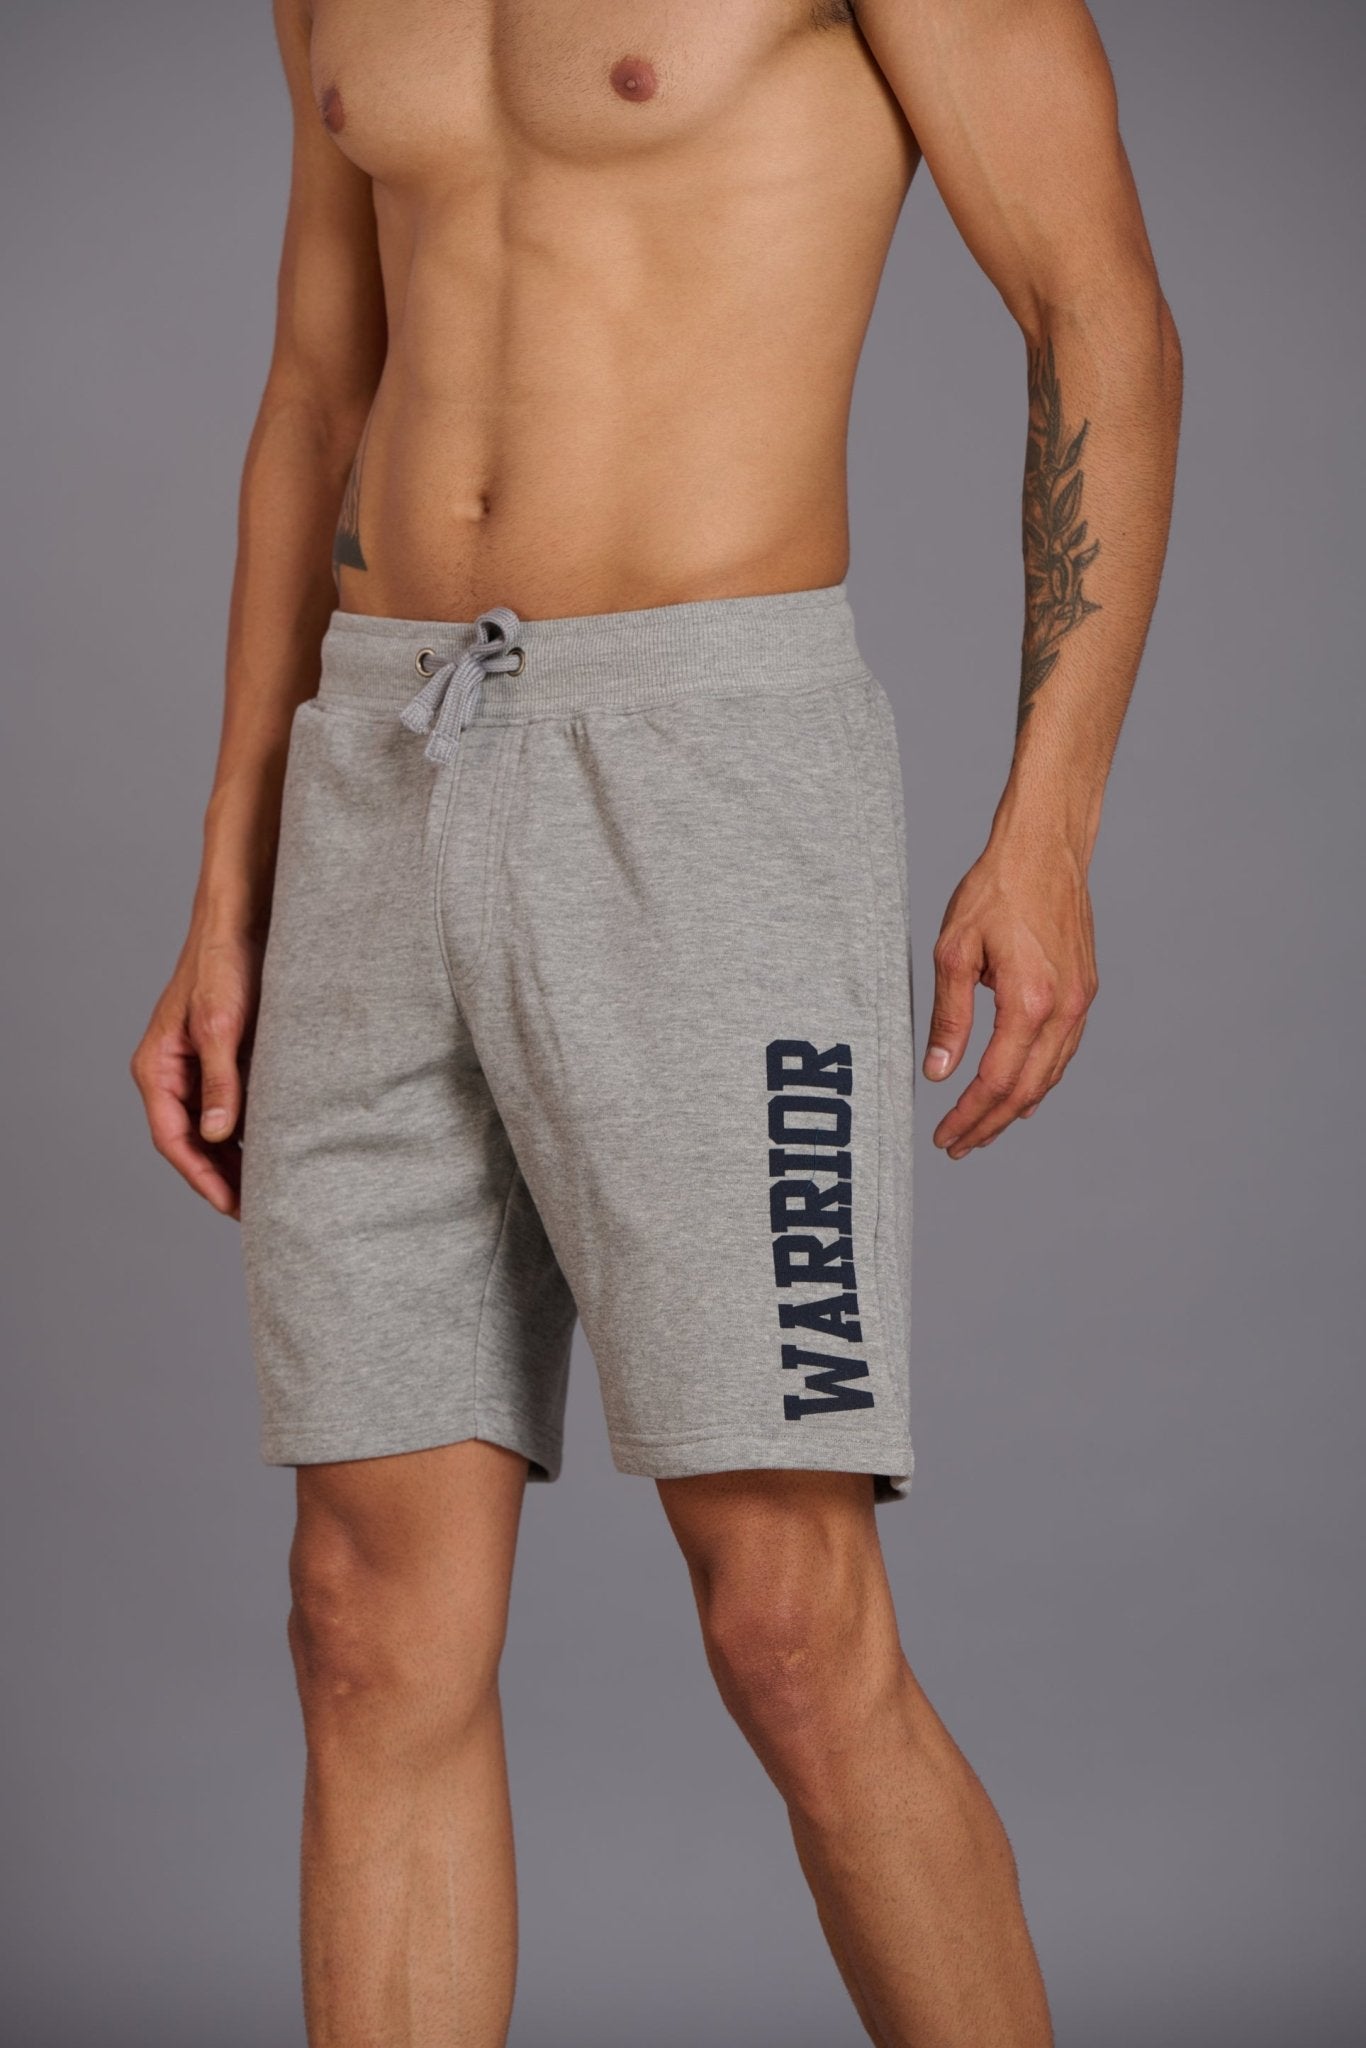 Warrior Printed Grey Shorts for Men - Go Devil